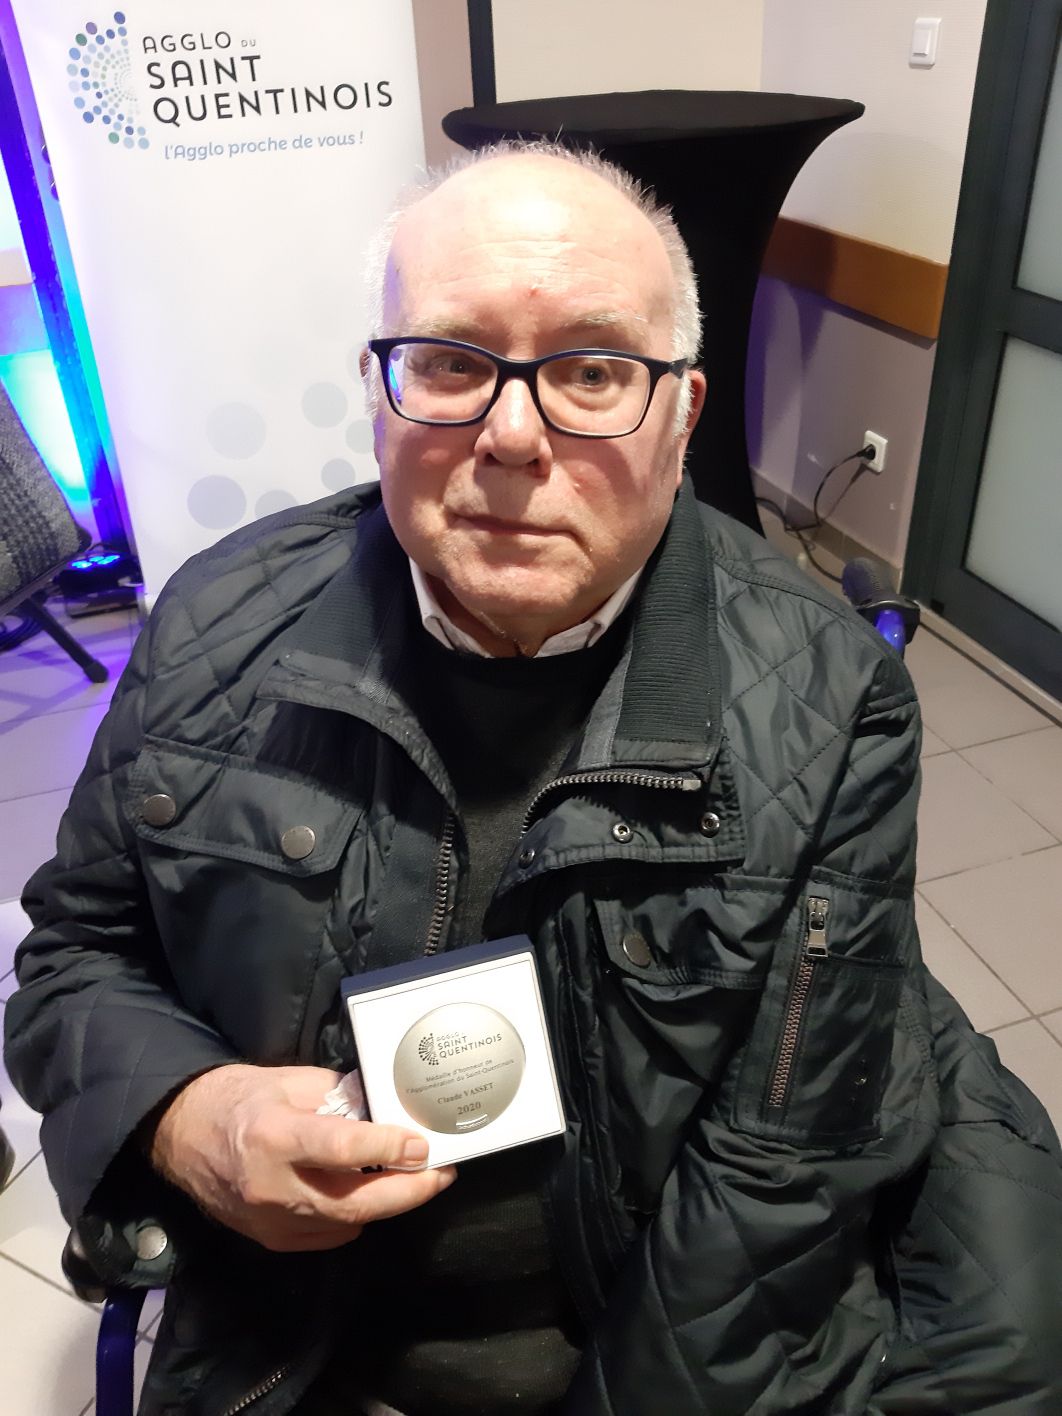 La médaille d'honneur de l'Agglo du Saint-Quentinois à Claude